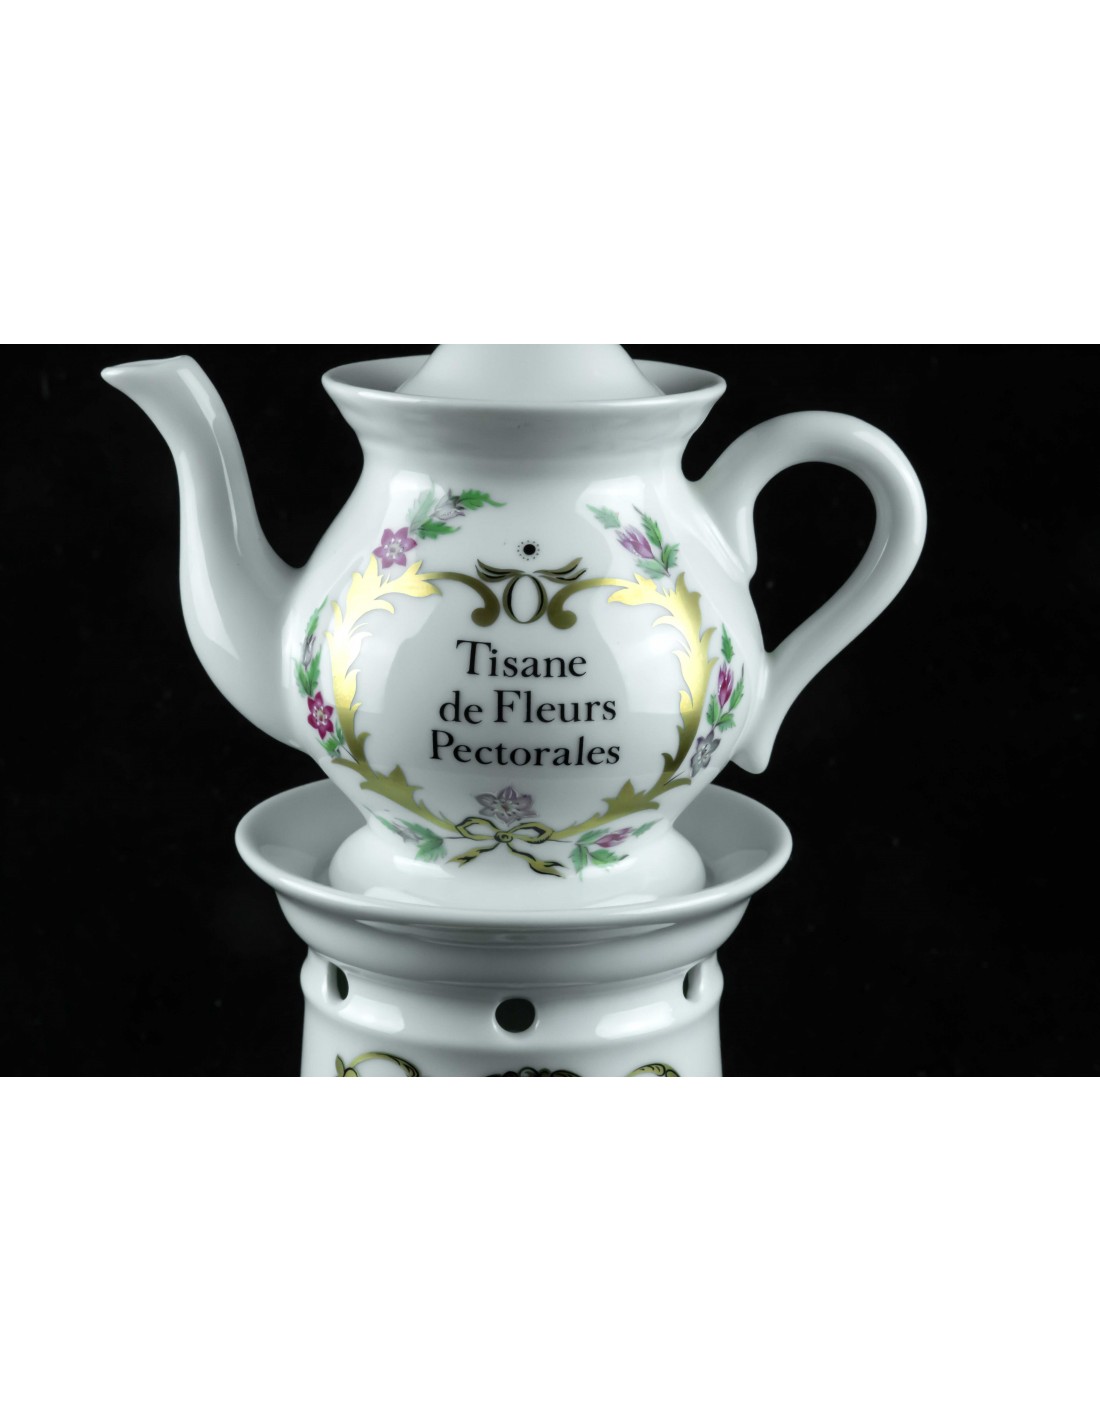 Handmade Ceramic Tisaniere